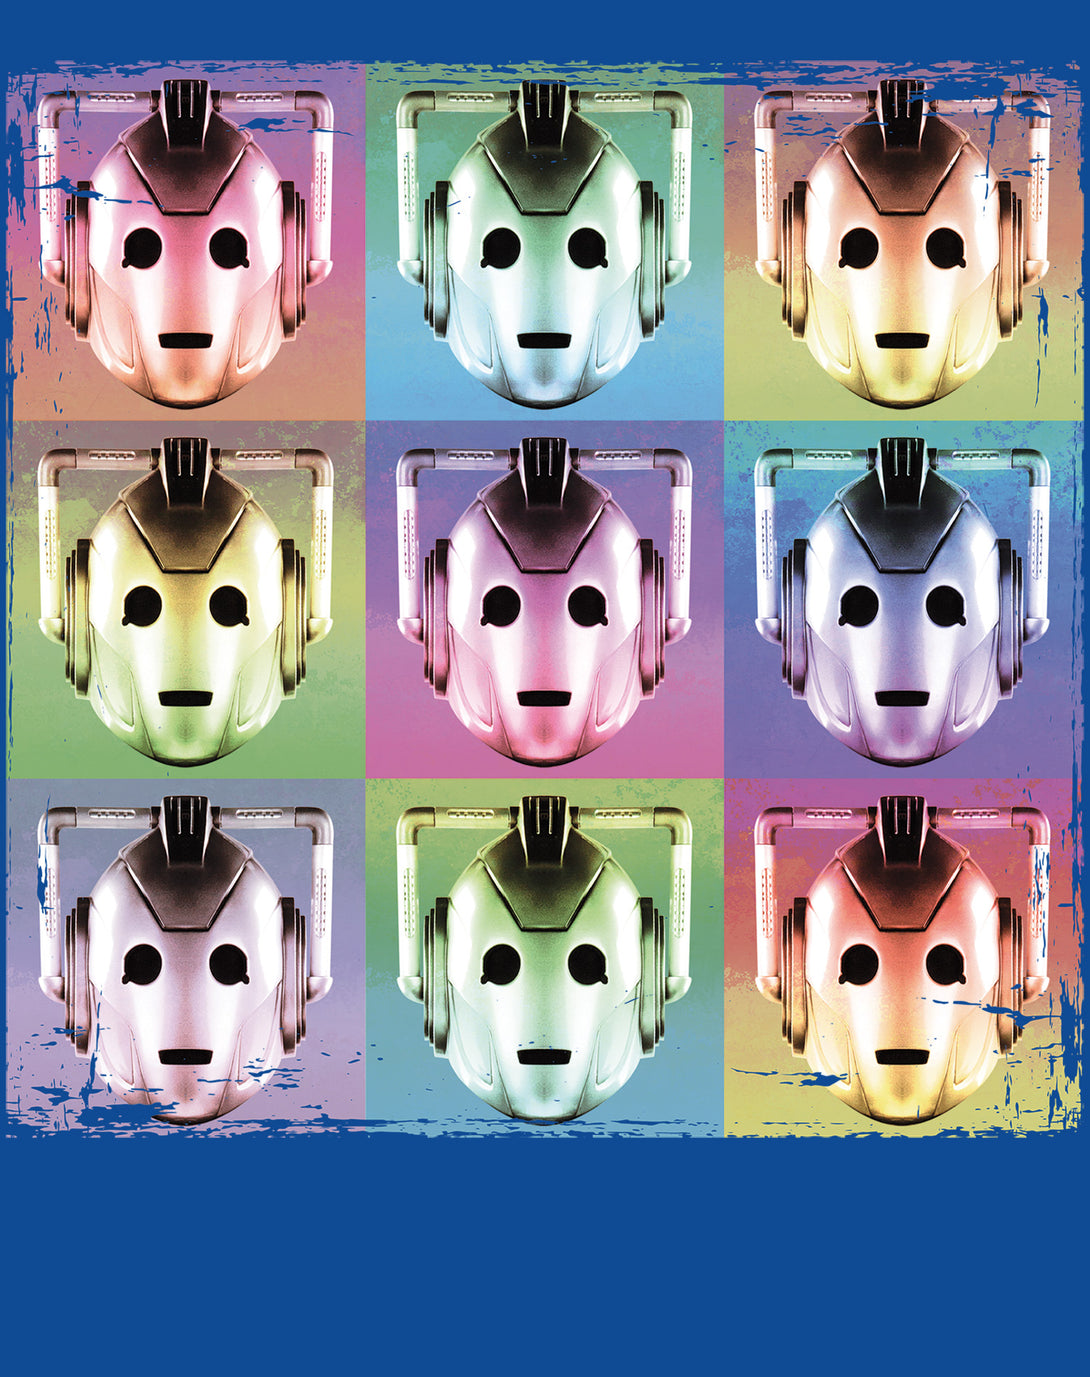 Doctor Who Pop Art Cybermen Official Men's T-shirt Blue - Urban Species Design Close Up